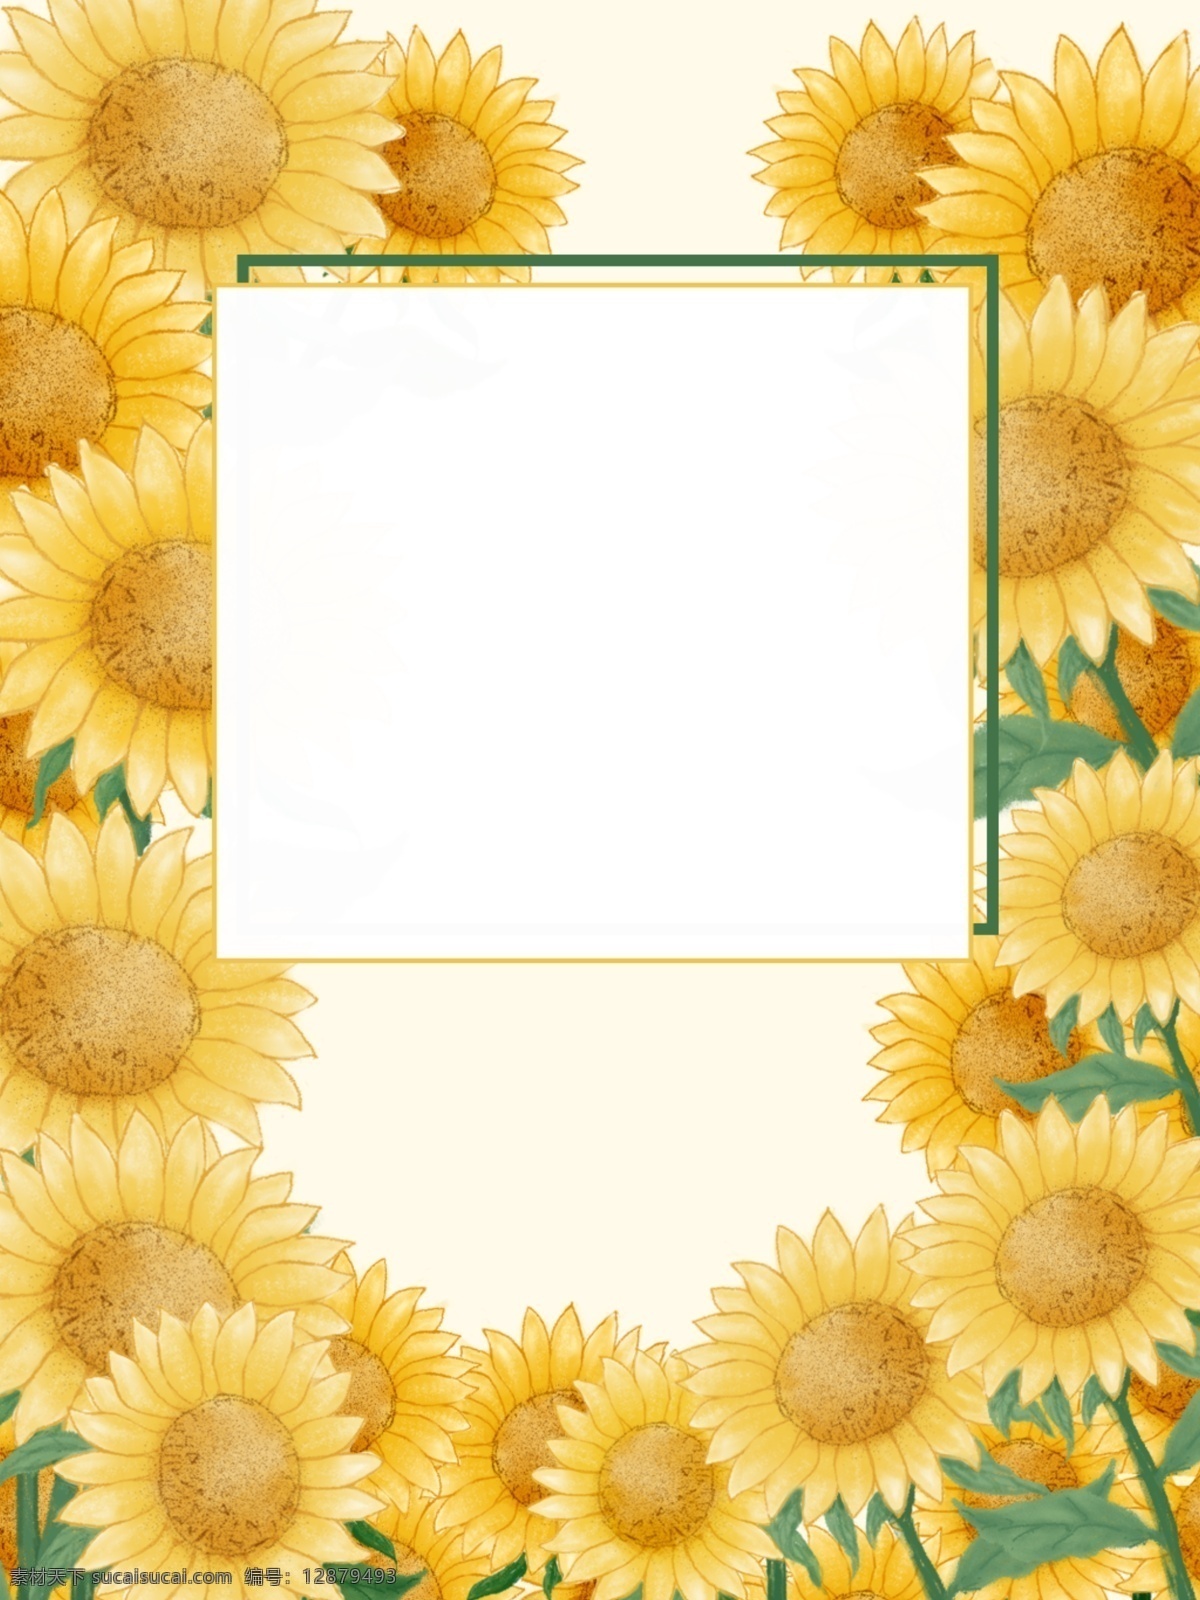 原创 纯 手绘 向日葵 背景 手绘向日葵 黄色背景 向日葵背景 温暖颜色 热情洋溢 满满的向日葵